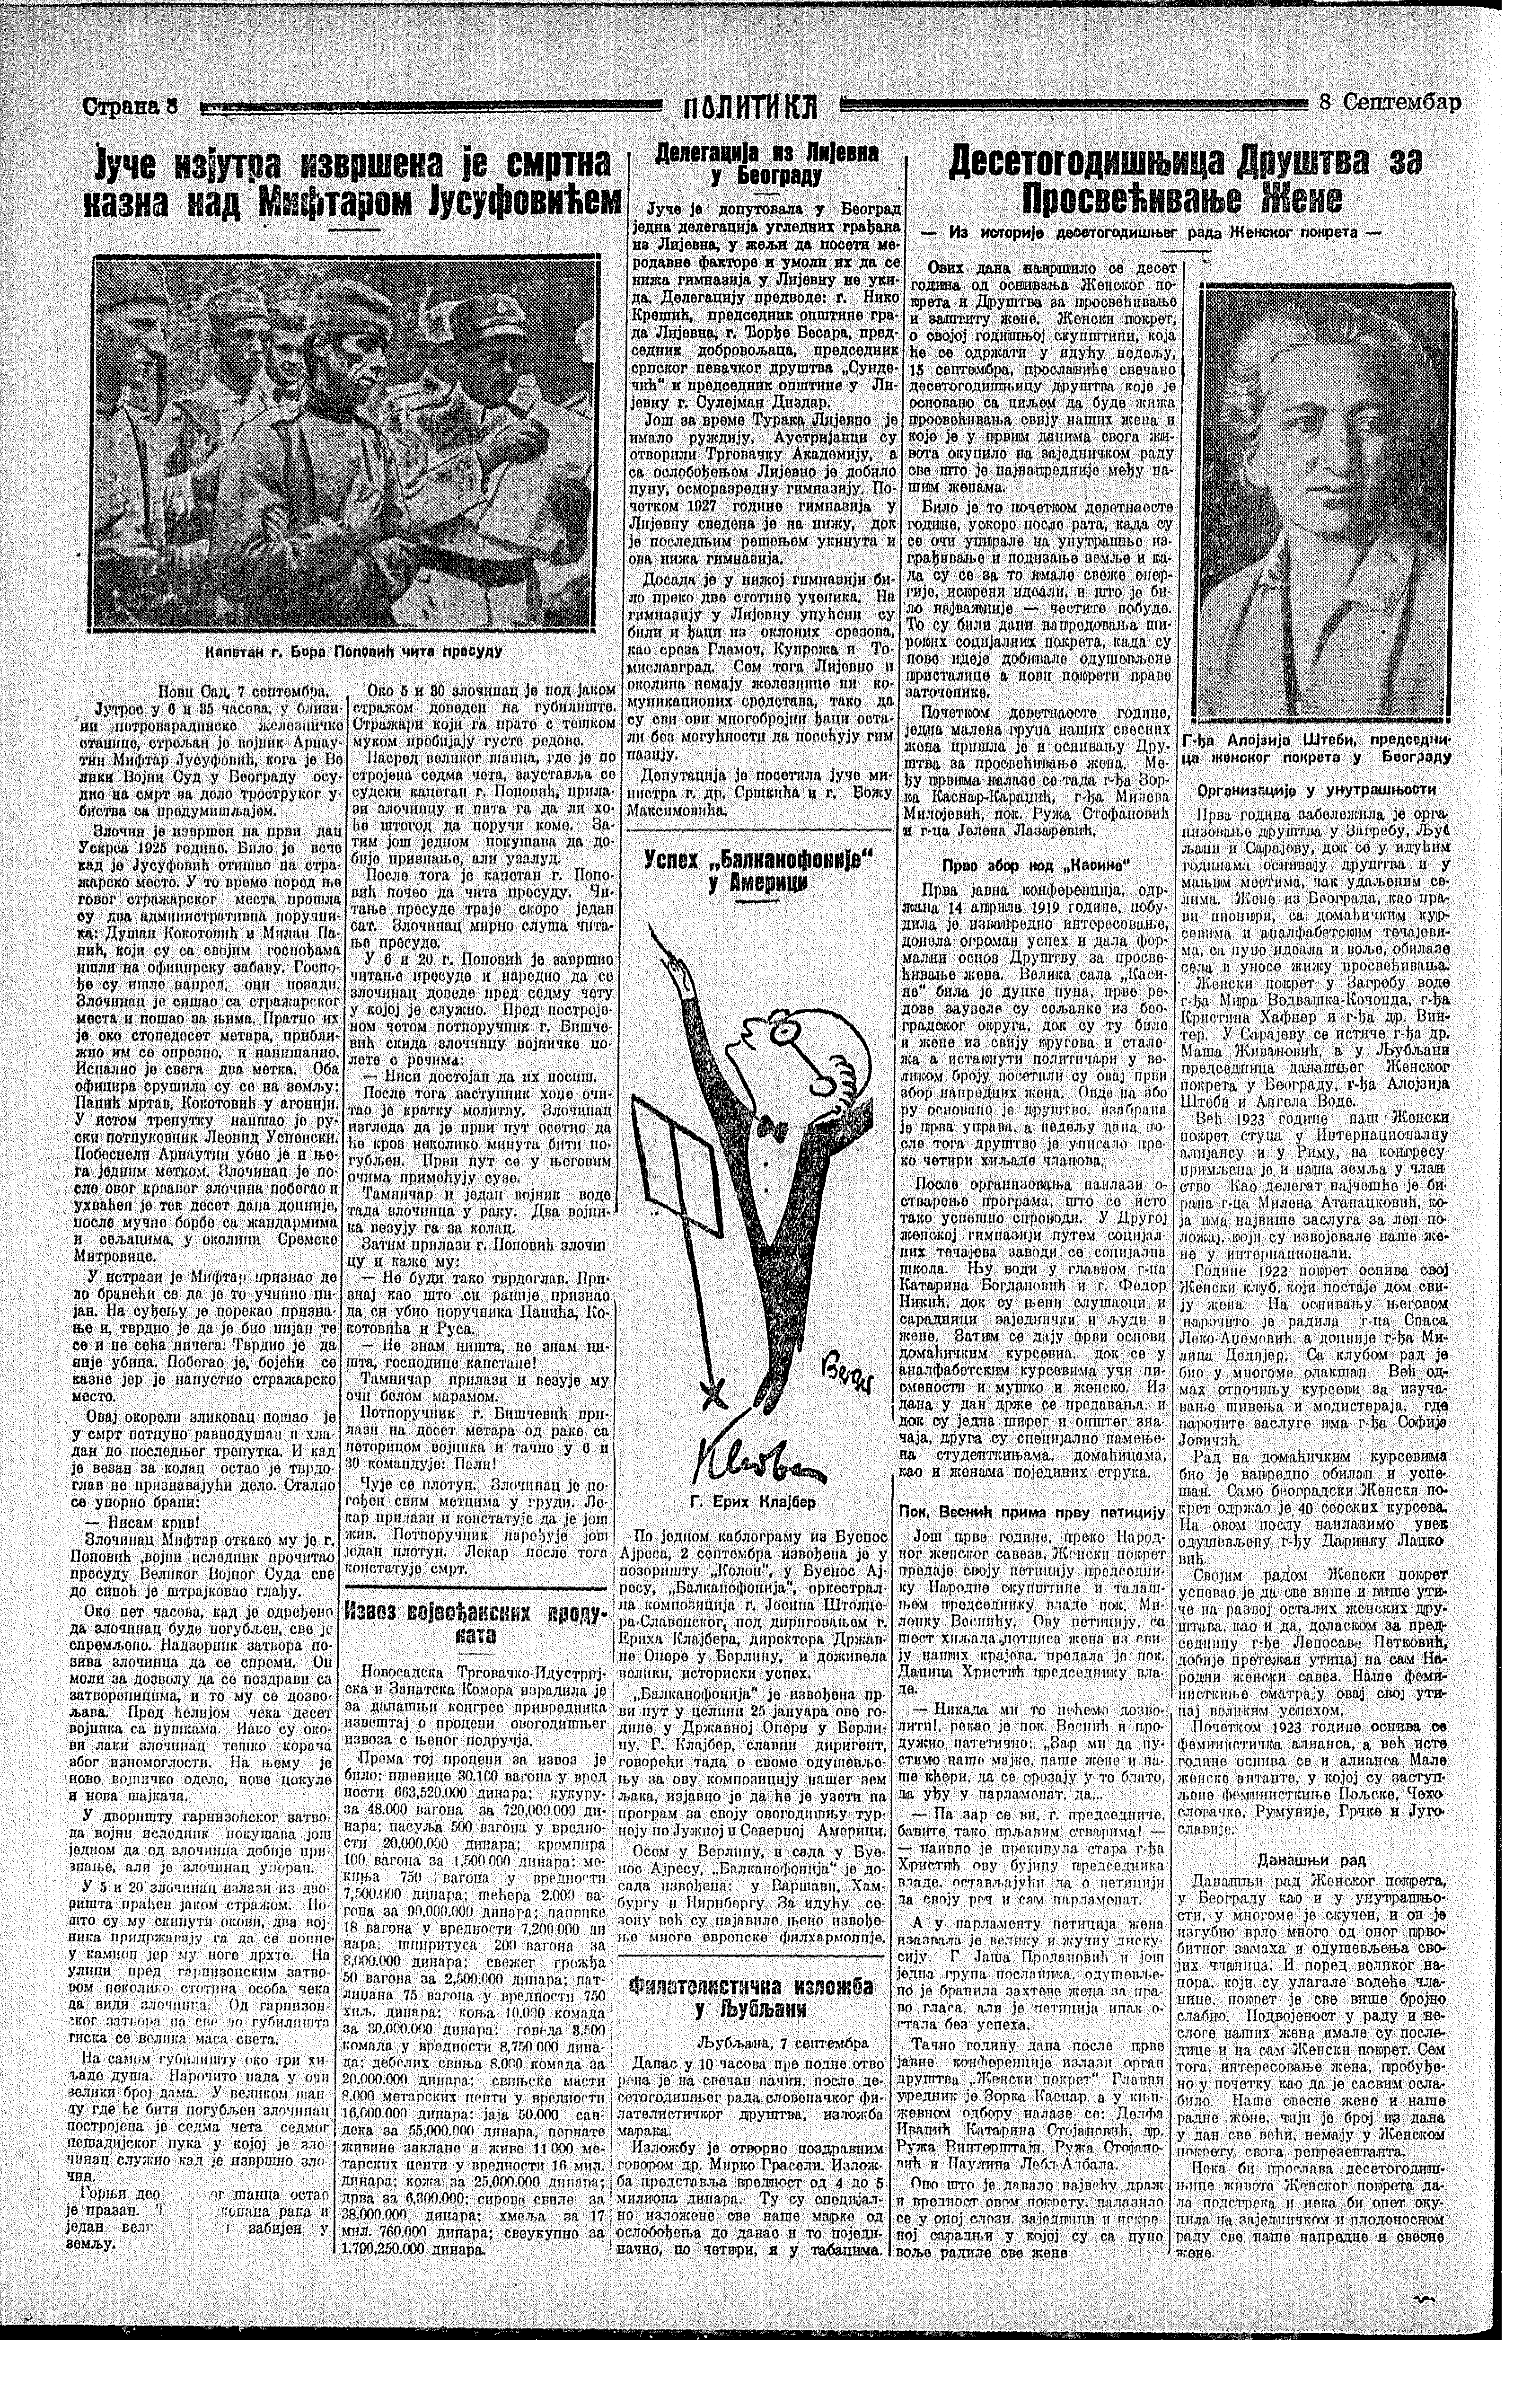 Juče izjutra izvršena je smrtna kazna, Politika, 08.09.1929.